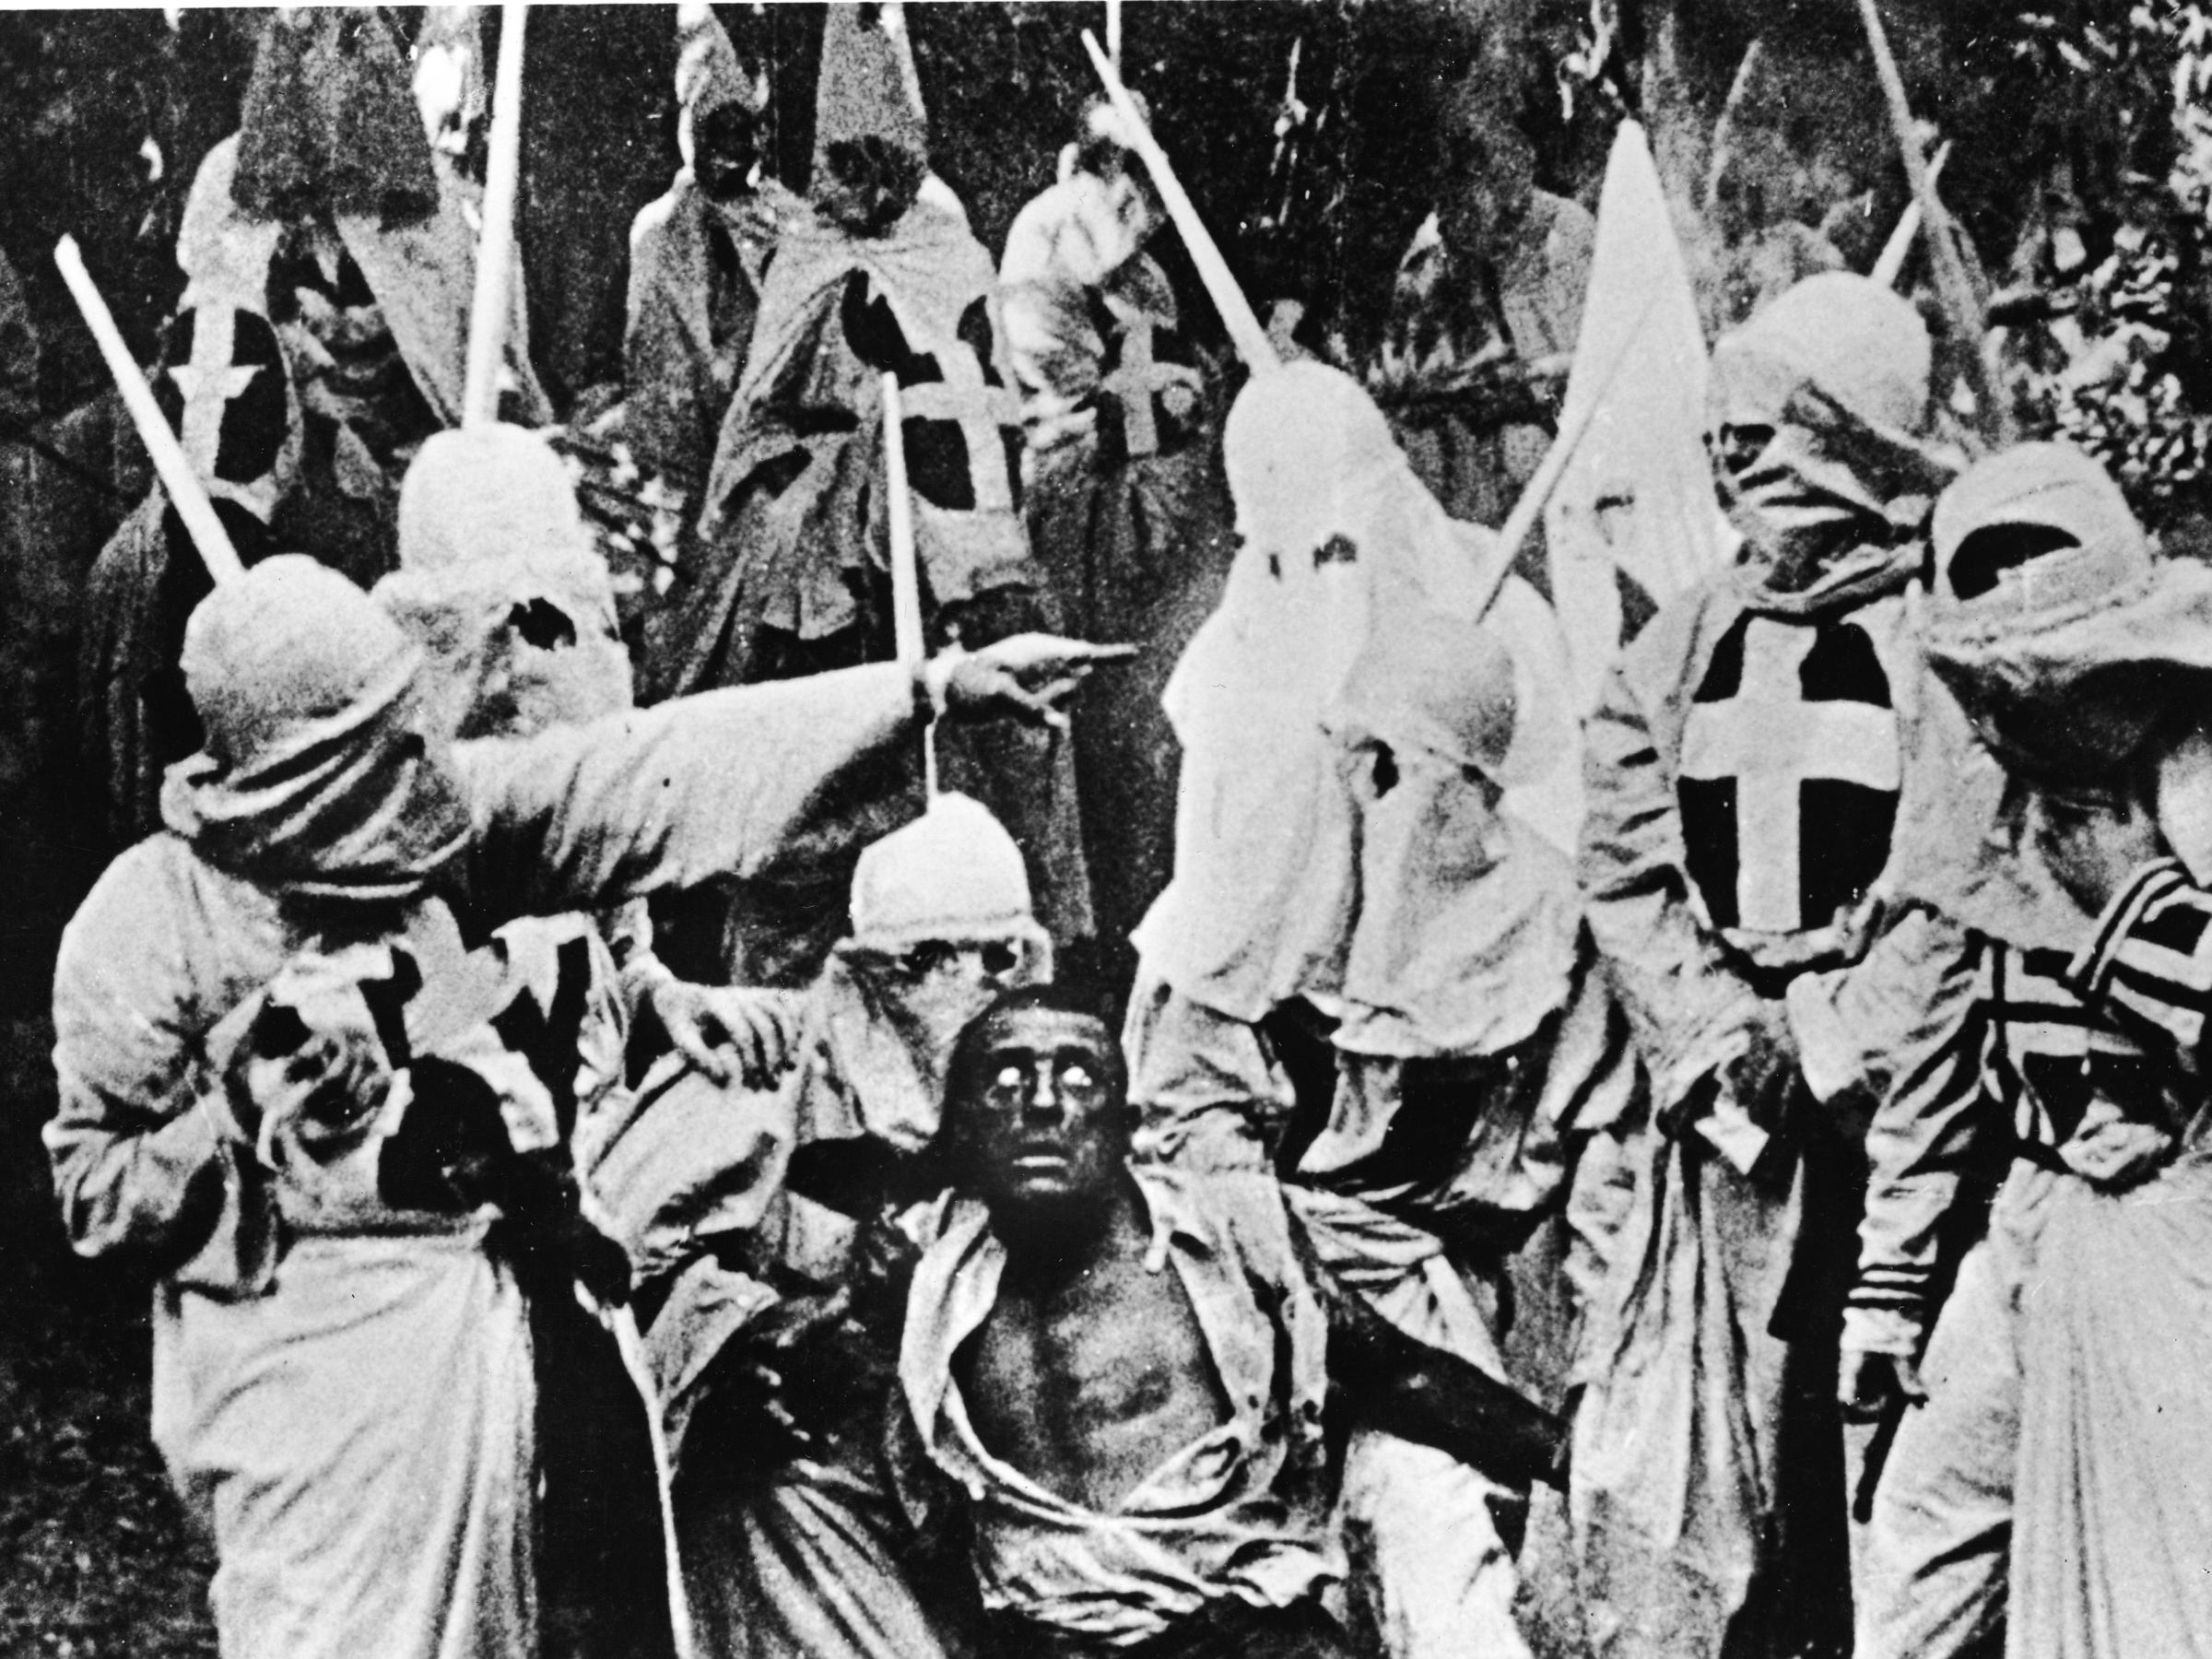 Racism and the Ku Klux Klan